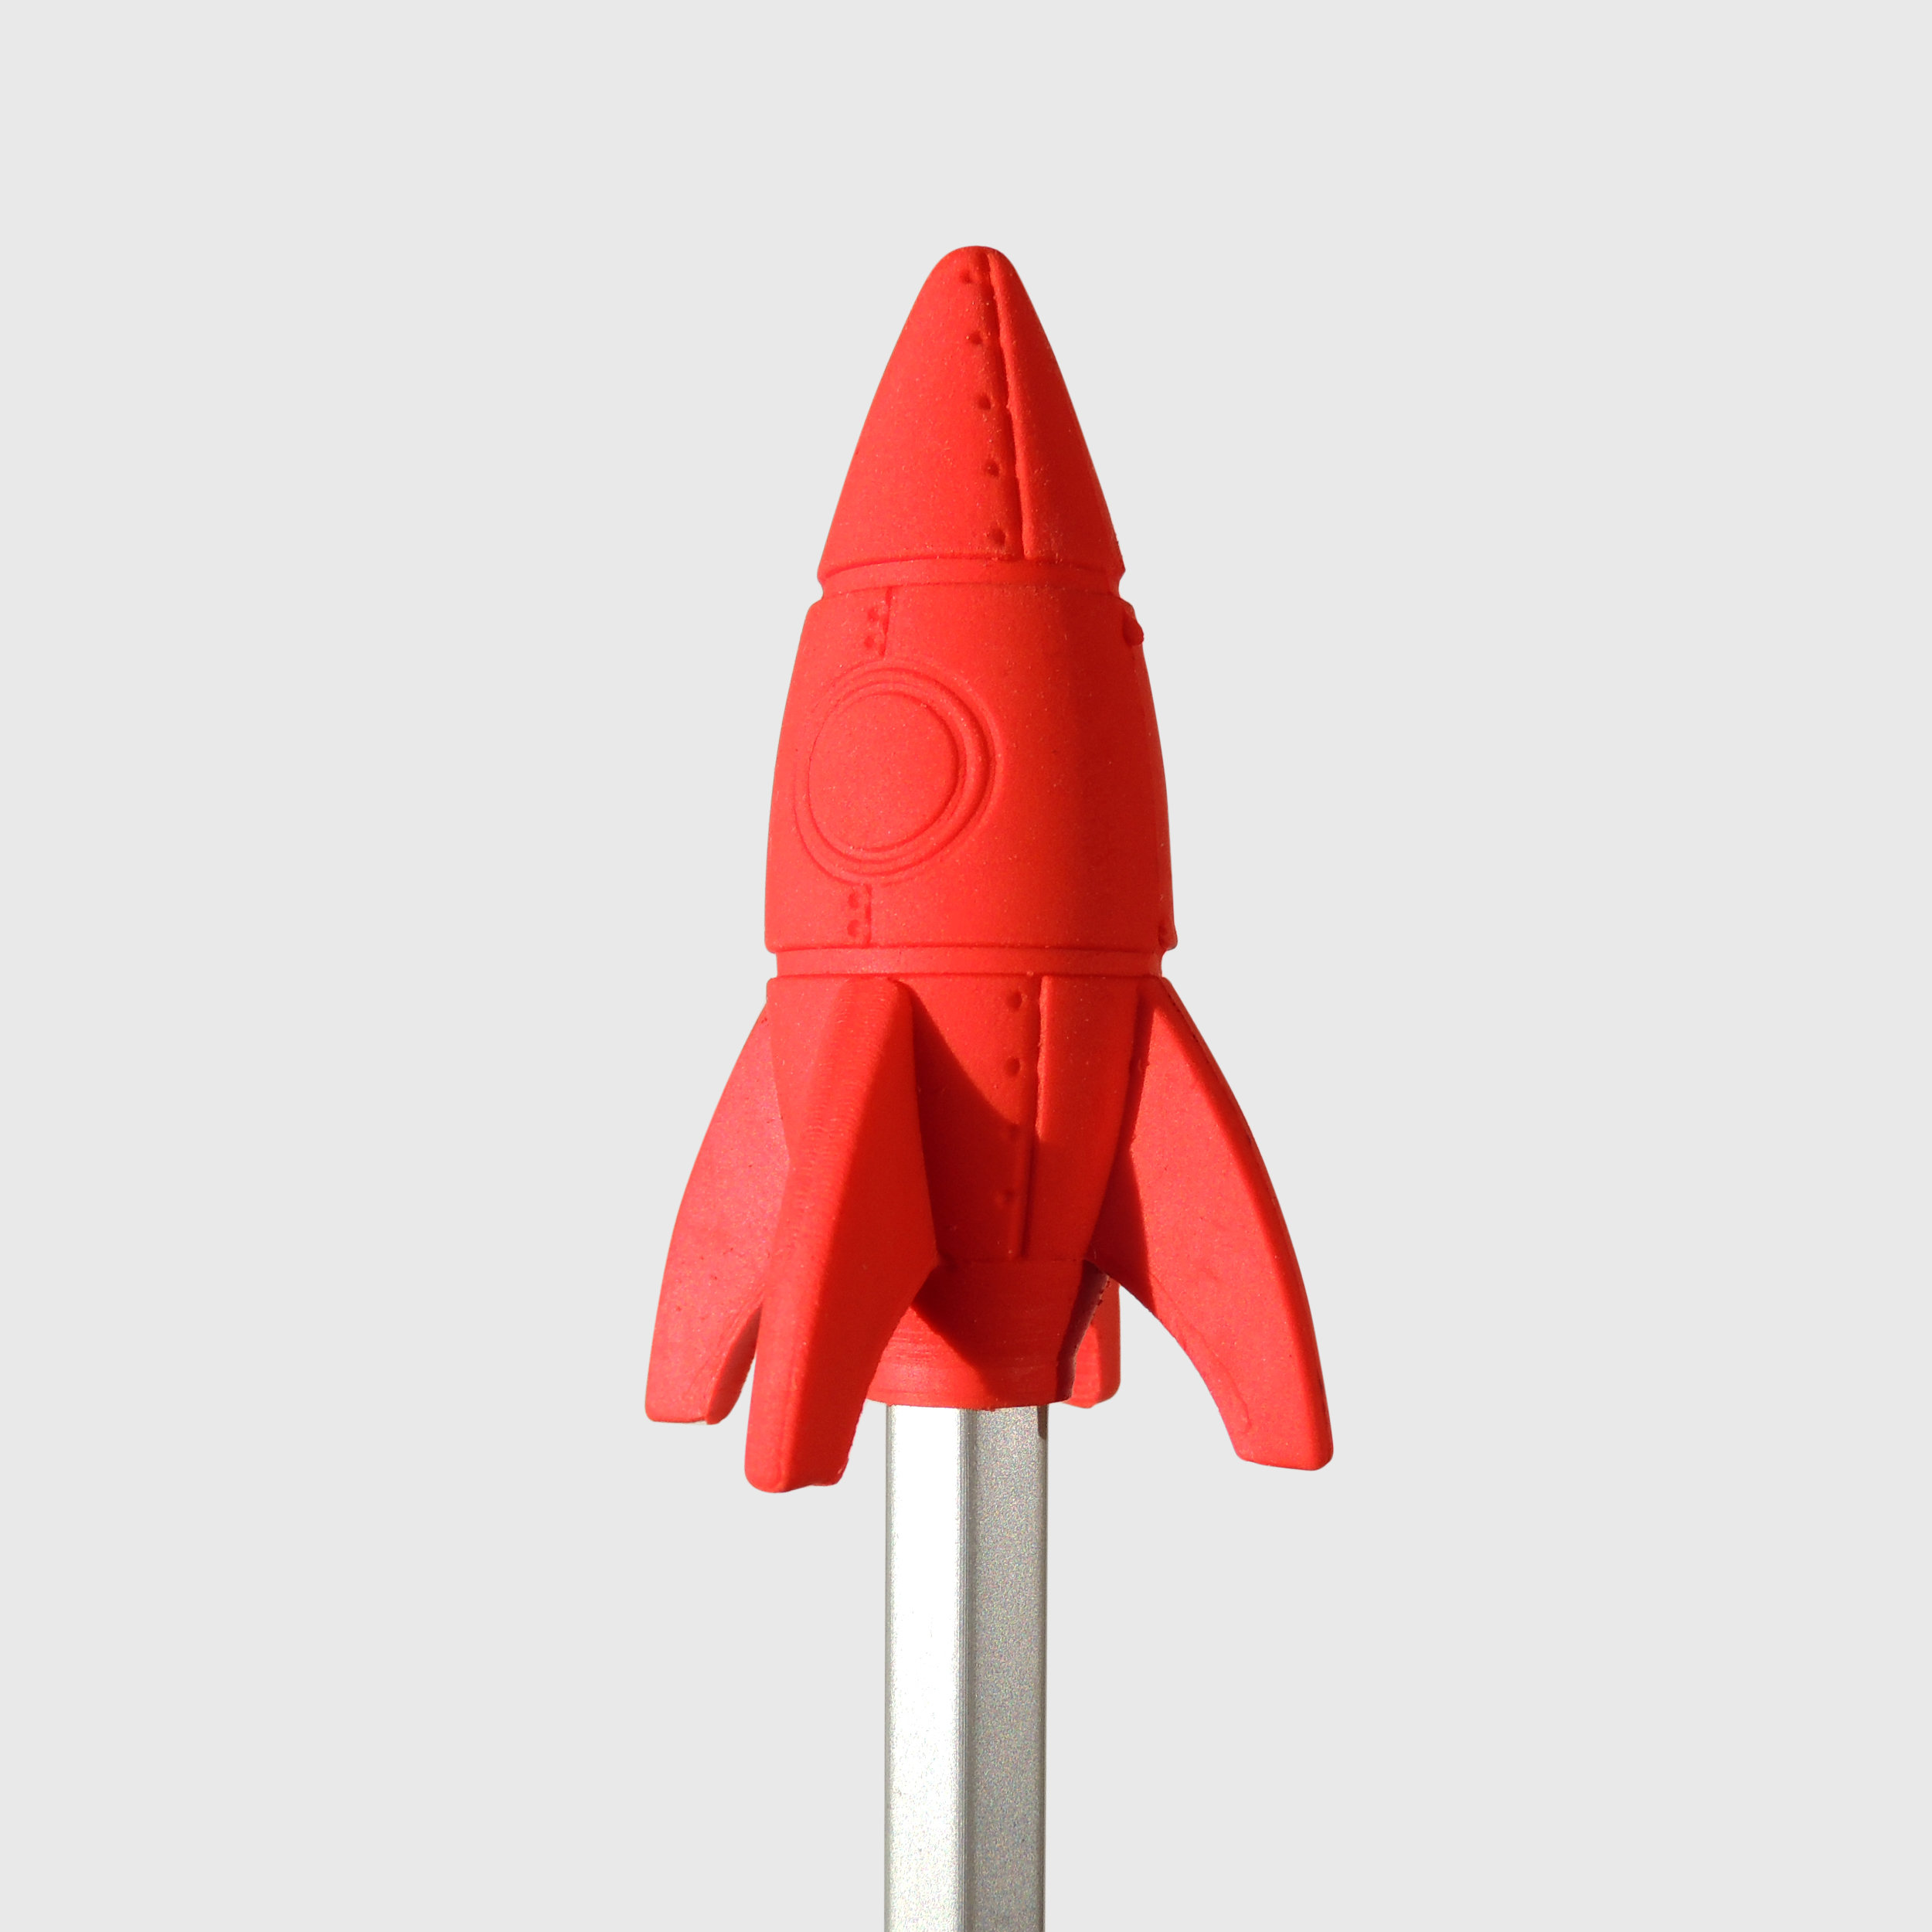 Rocket eraser on silver pencil